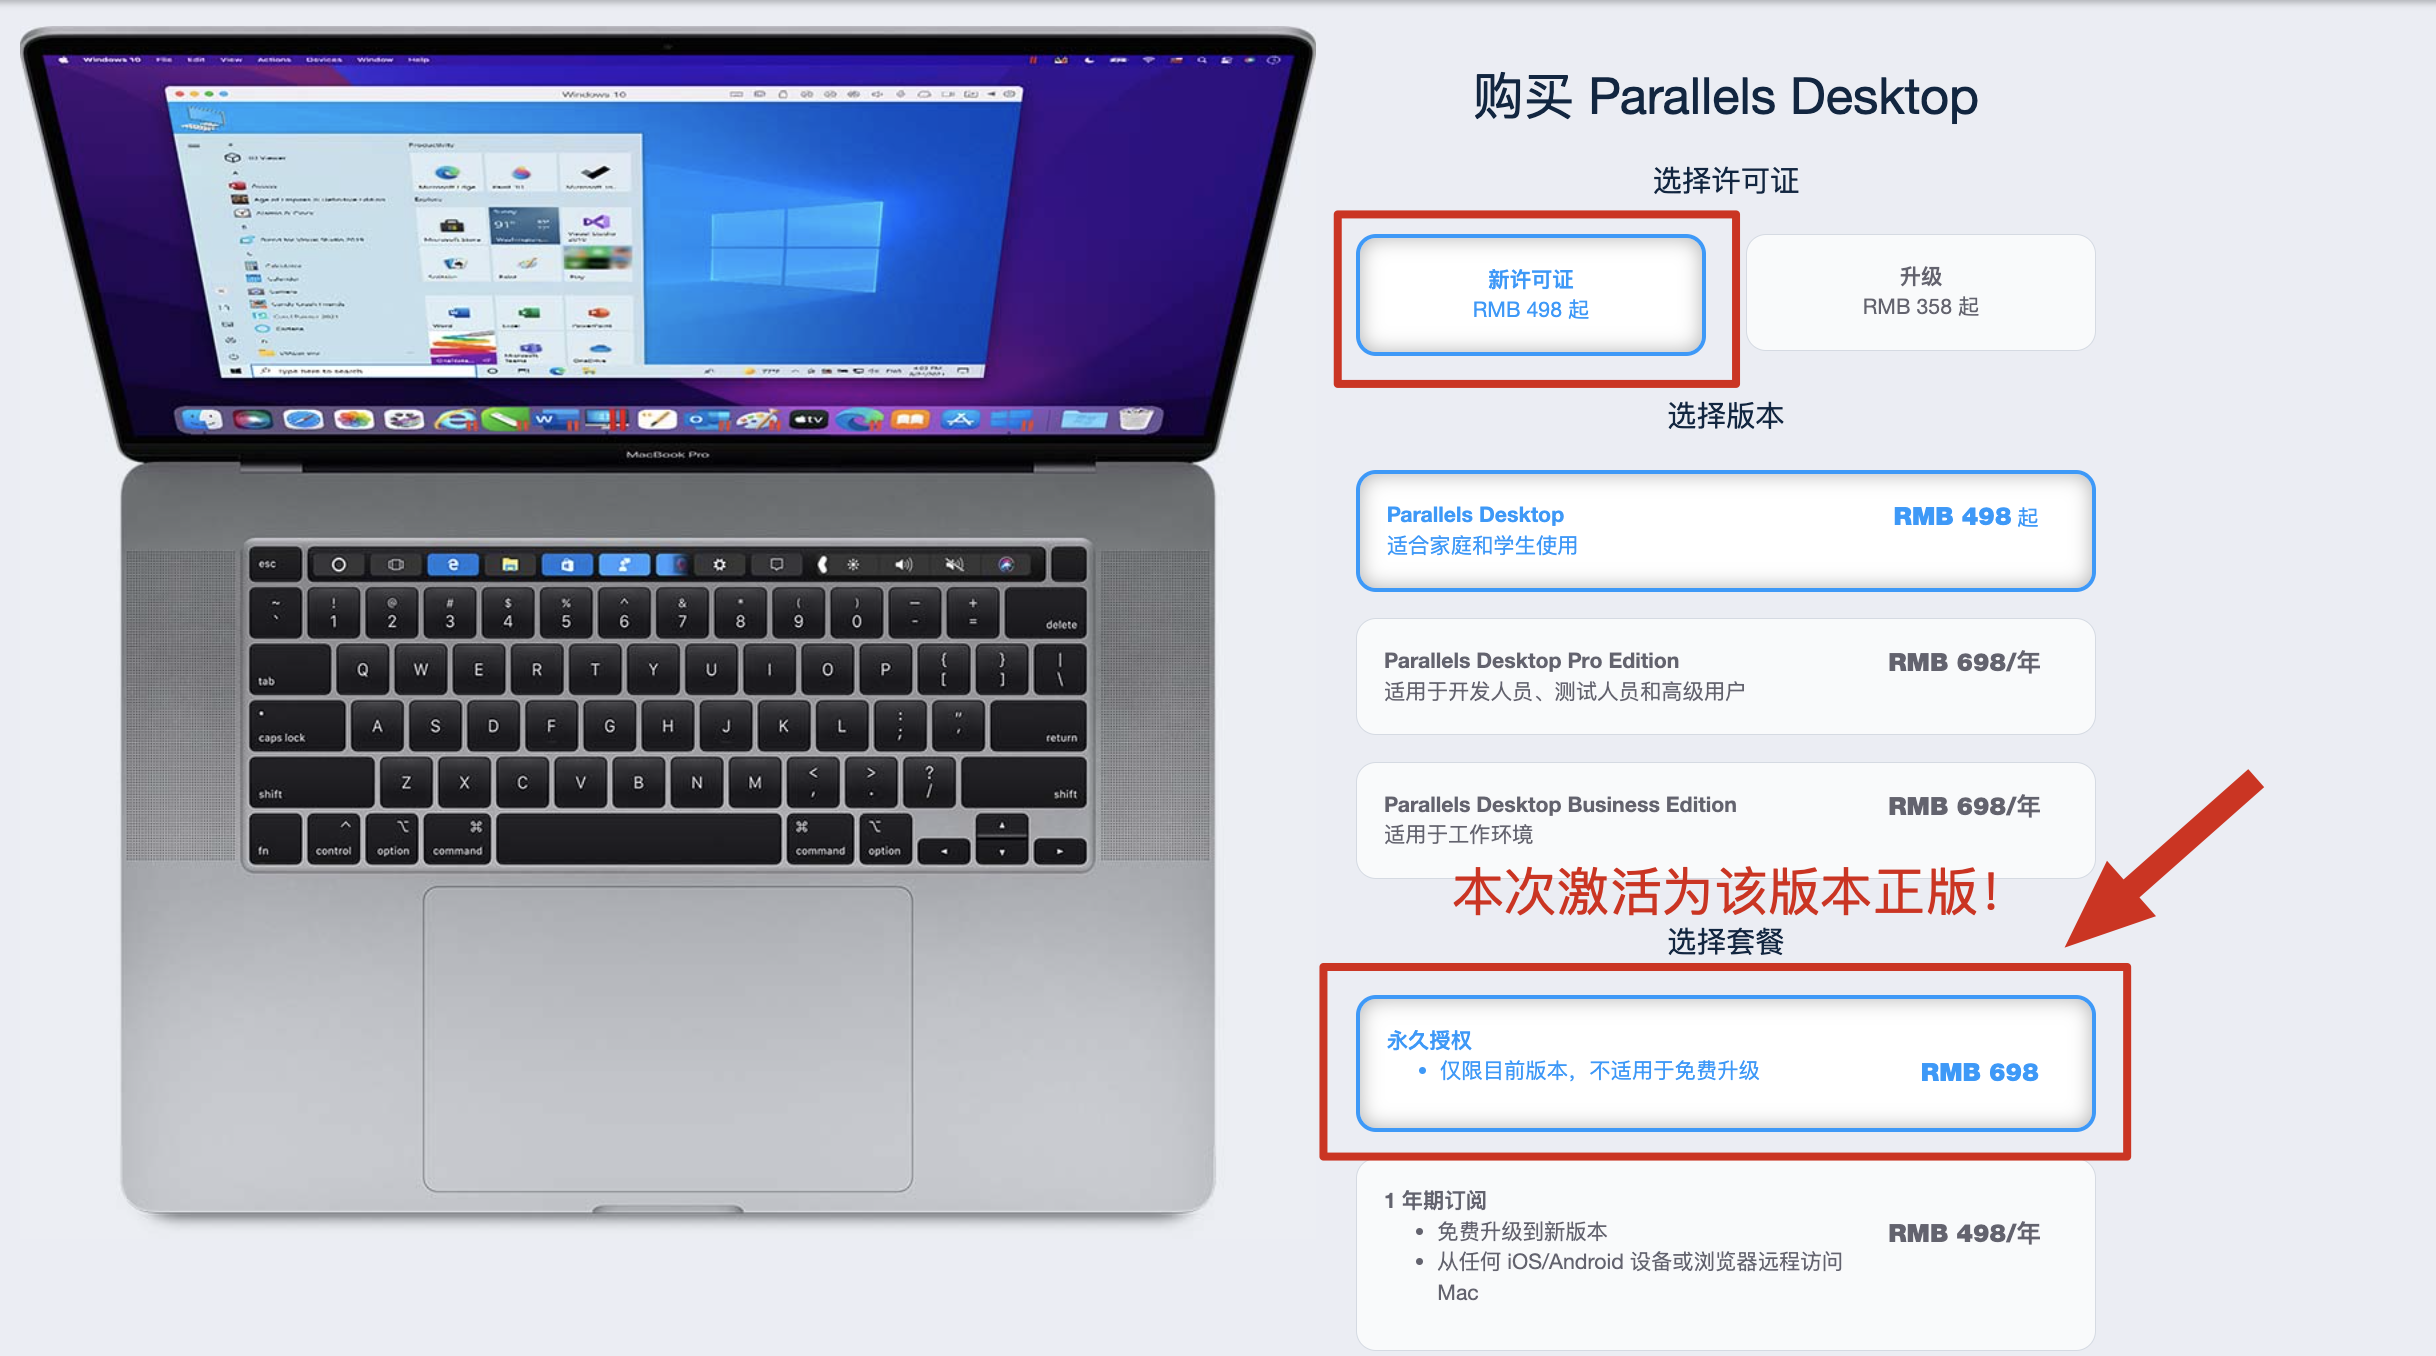 特价 Parallels Desktop 17.1.4 正版密钥 永久授权许可证激活，正版授权，永久使用 支持M1与intel Mac上最优秀的虚拟机